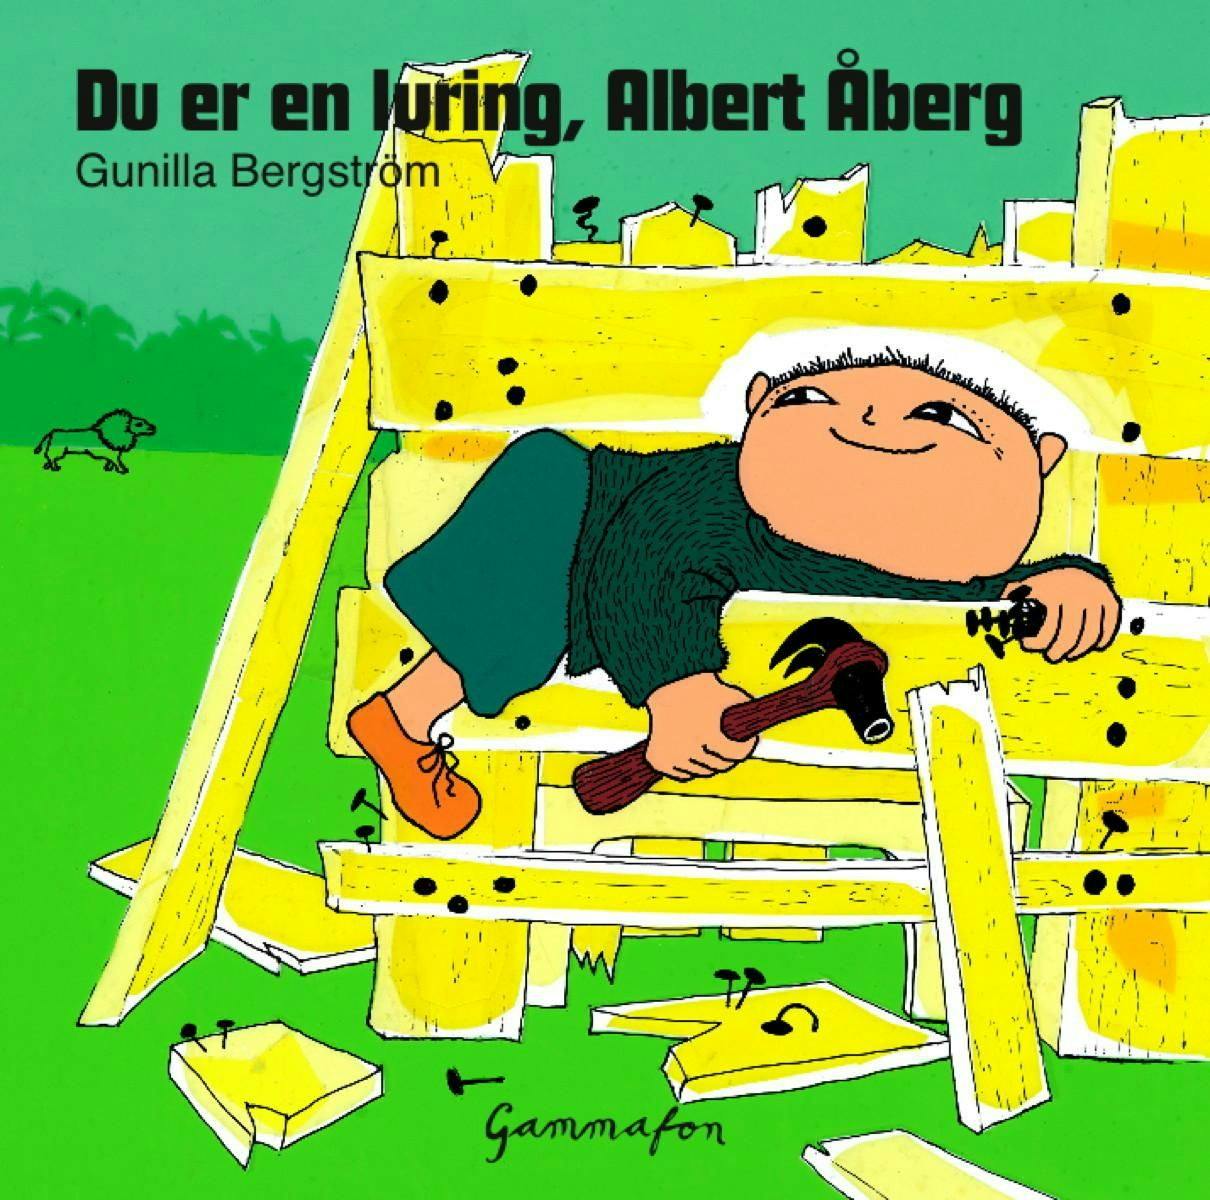 Du er en luring, Albert Åberg - undefined